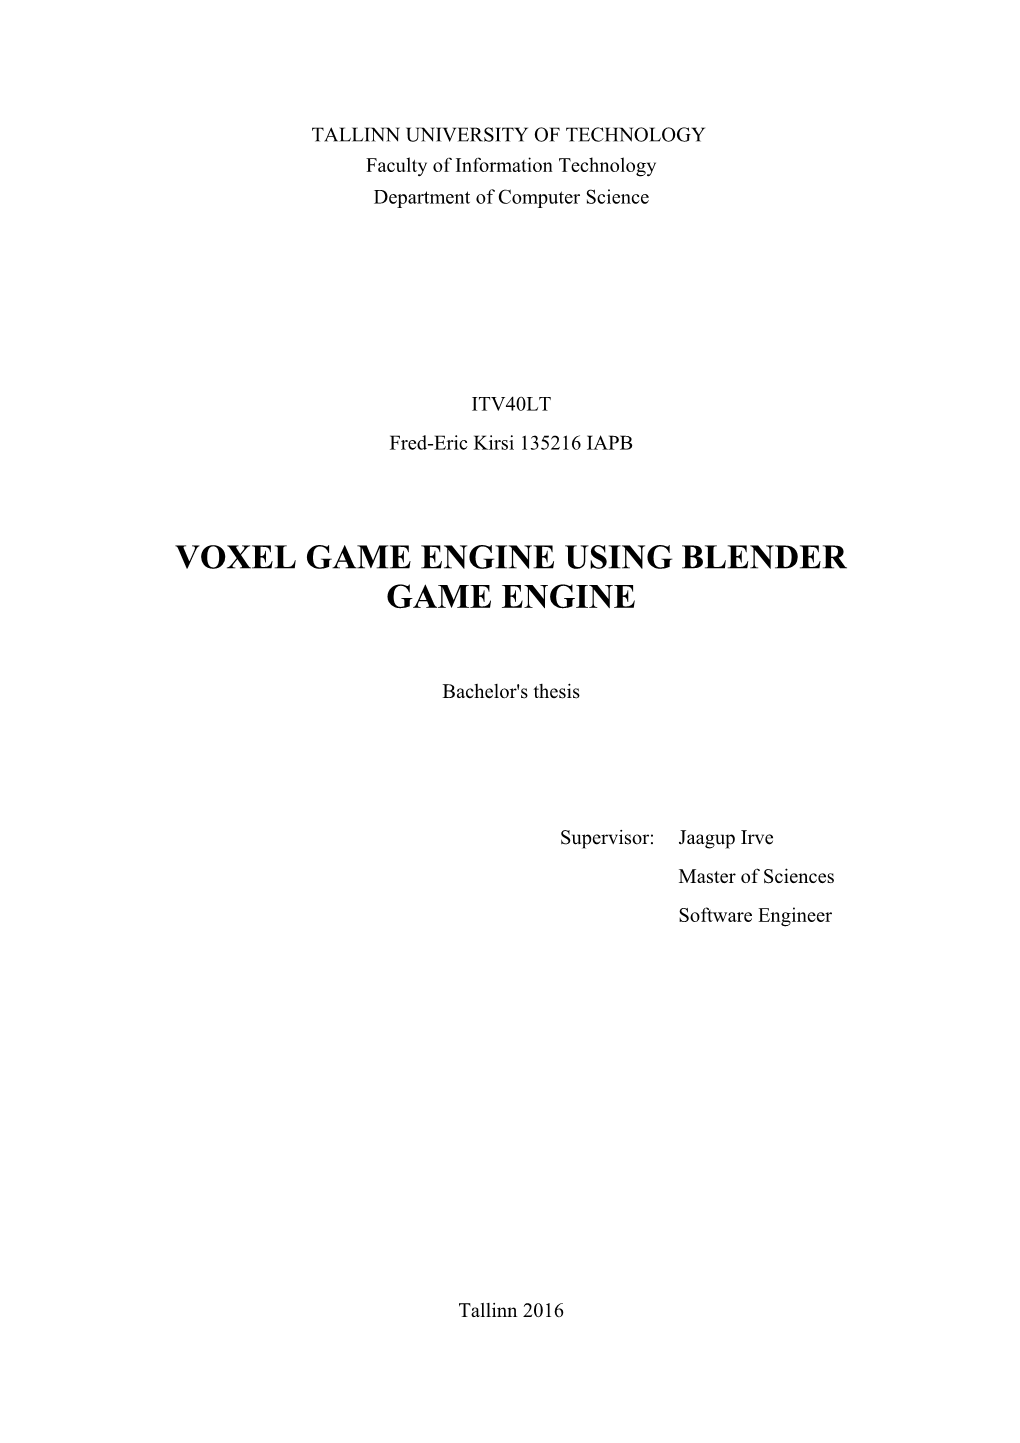 Voxel Game Engine Using Blender Game Engine